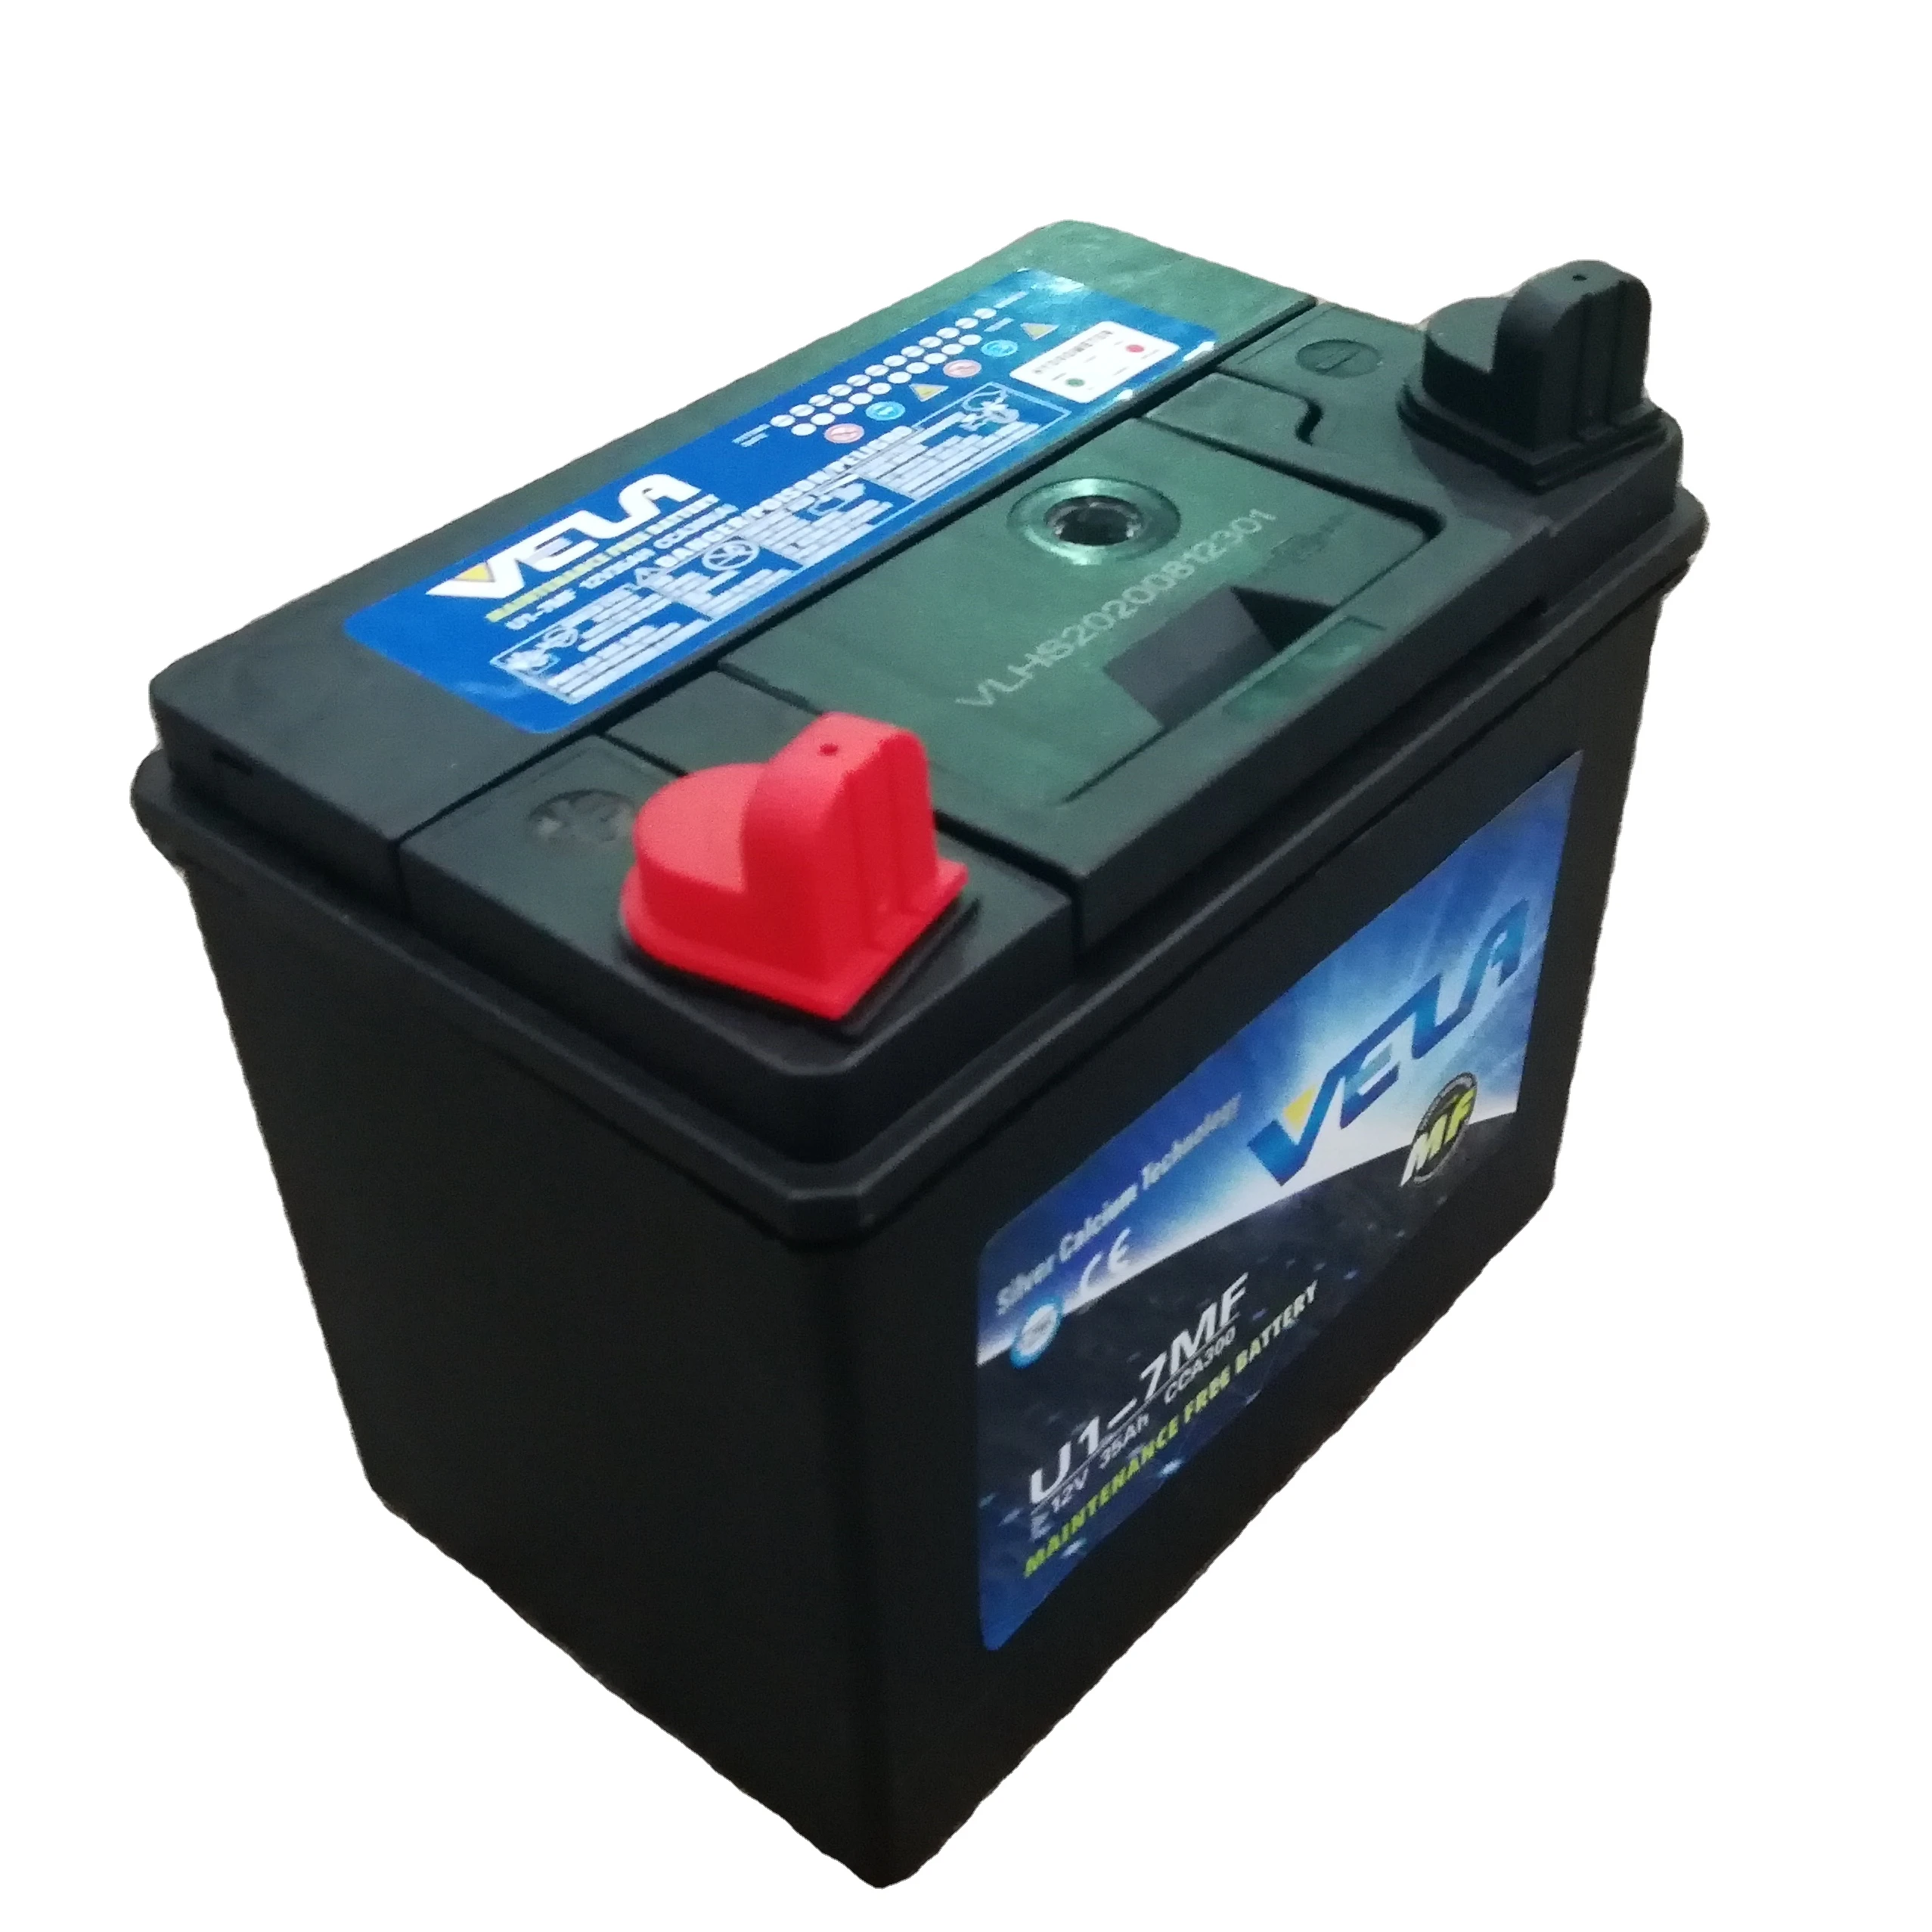 Slette enorm Modsætte sig Lawn And Garden Lead Acid Starting Batteries U1 Battery 12v Generator  Battery - Buy Lawn Mower Battery,U1,Generator Battery Product on Alibaba.com